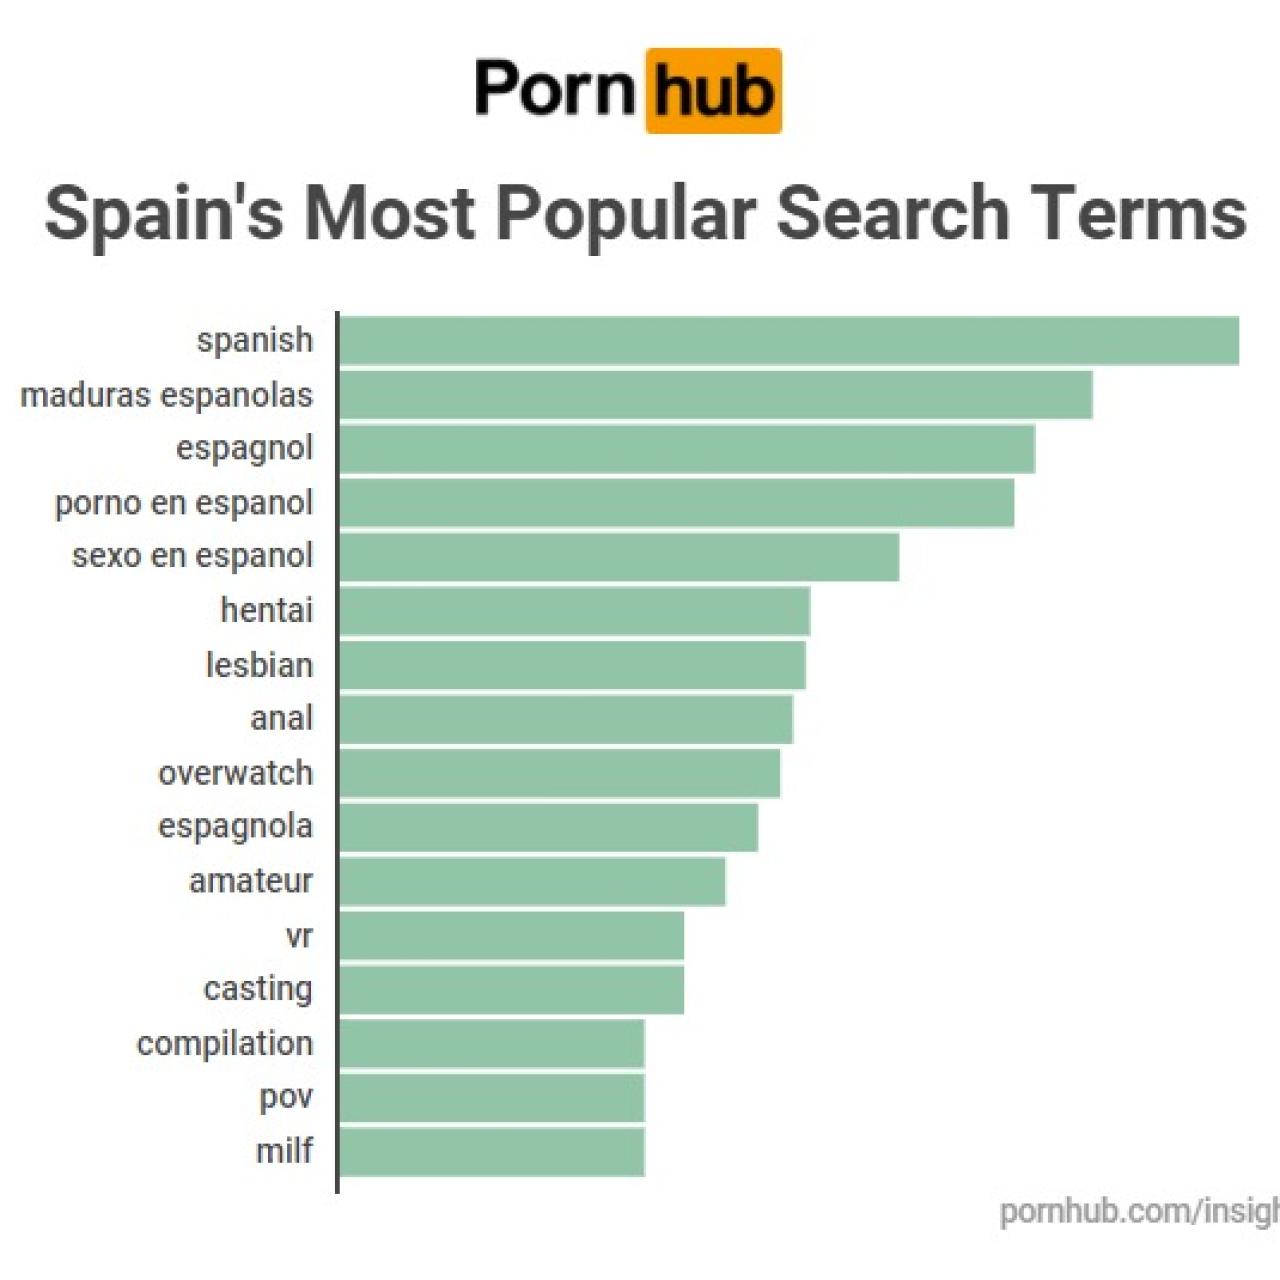 Las palabras más buscadas en Pornhub por los españoles